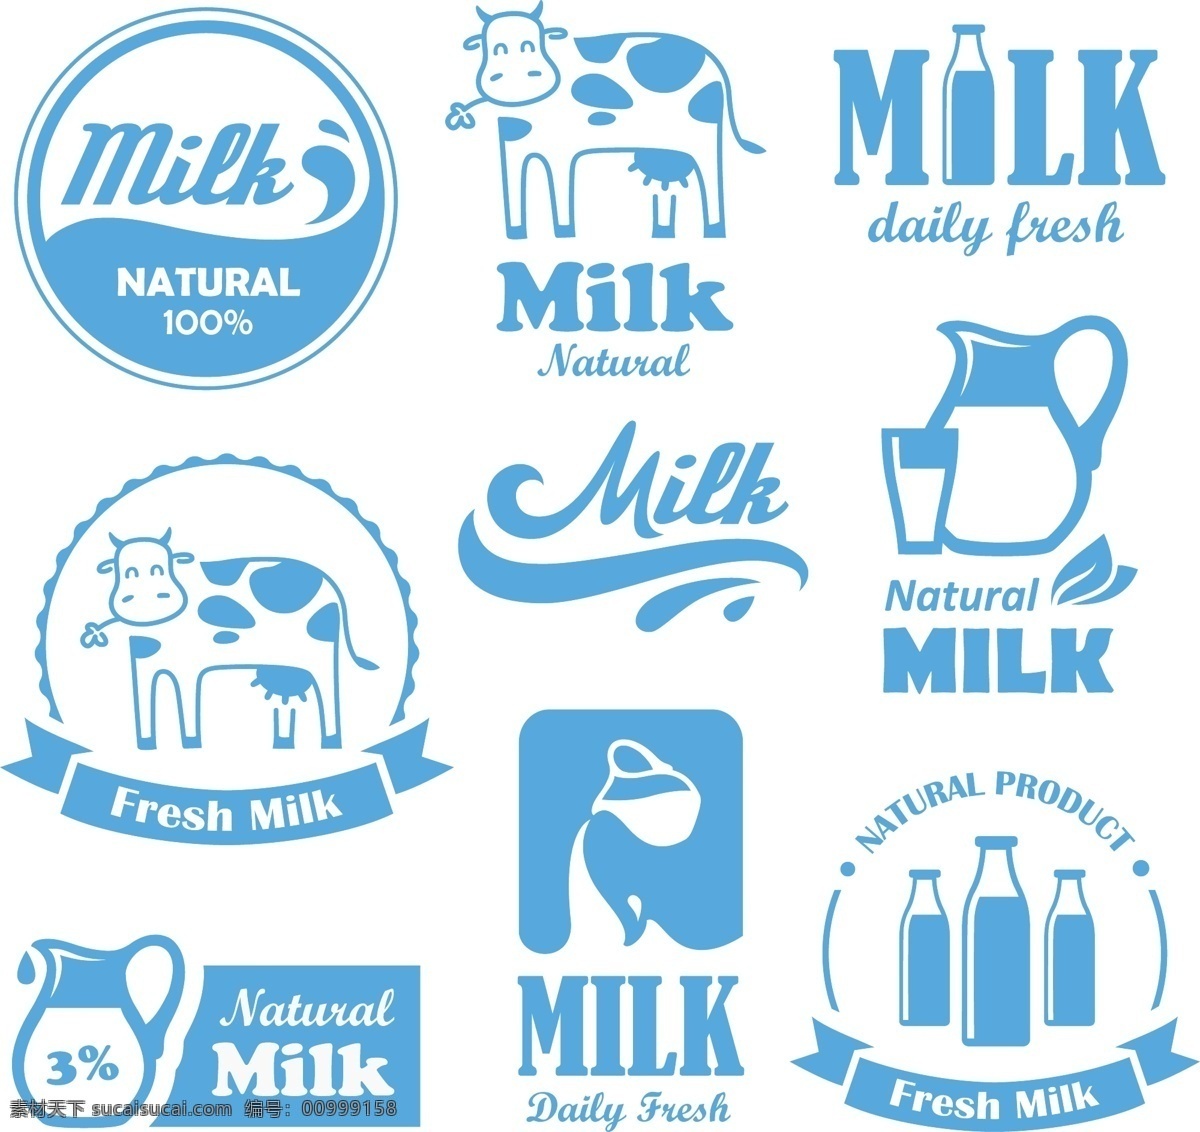 牛奶标志 牛奶 牛奶设计 牛奶图标 牛奶标签 牛奶商标 牛奶logo 抽象设计 卡通背景 矢量设计 卡通设计 艺术设计 标志图标 标识标志图标 矢量